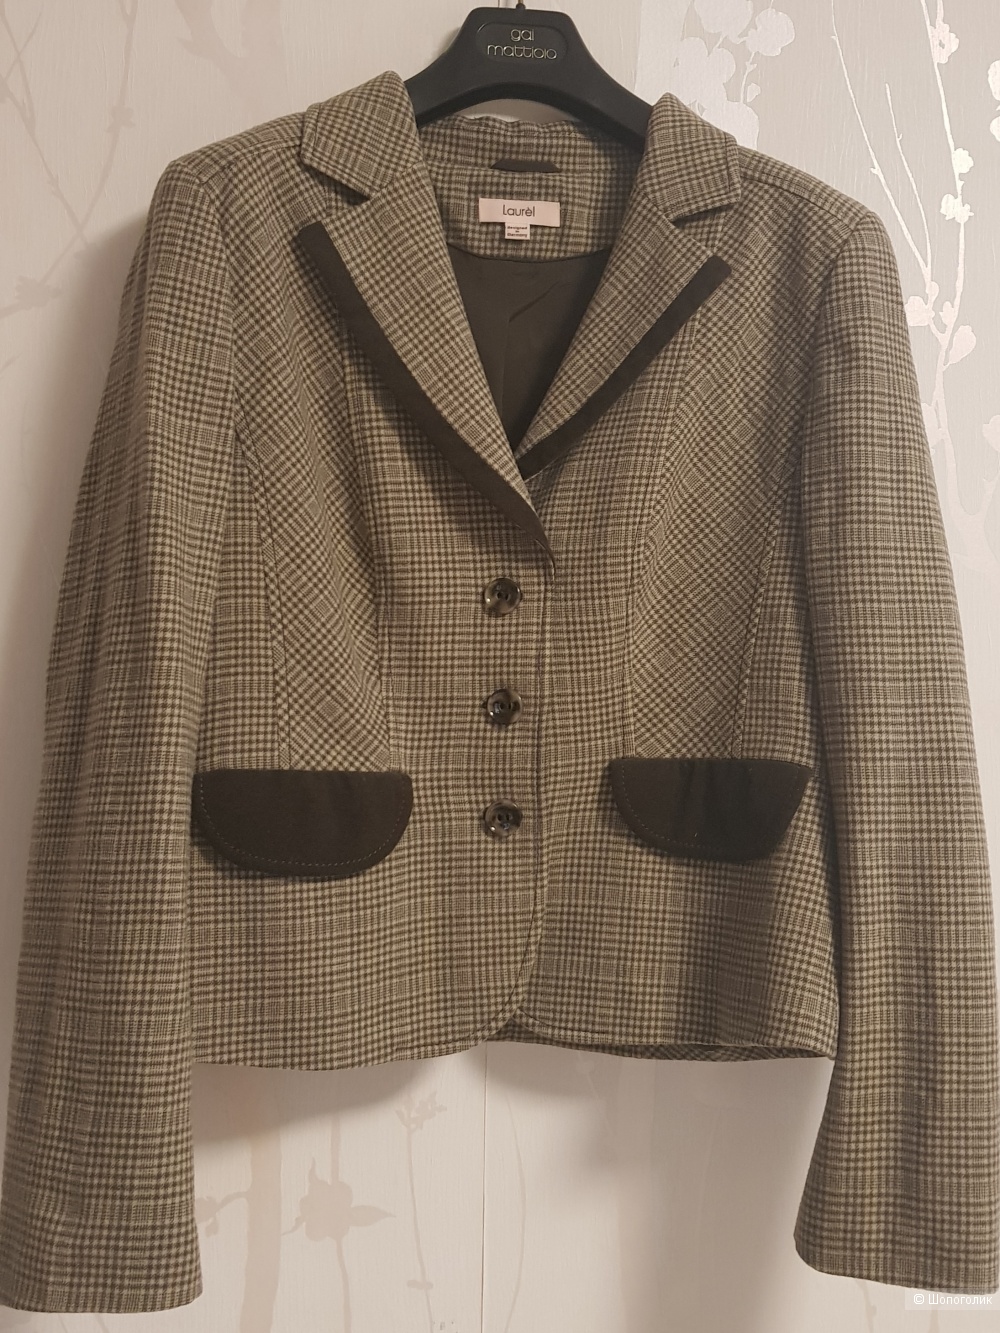 Пиджак Laurel, 46 размер ( 40 EU)